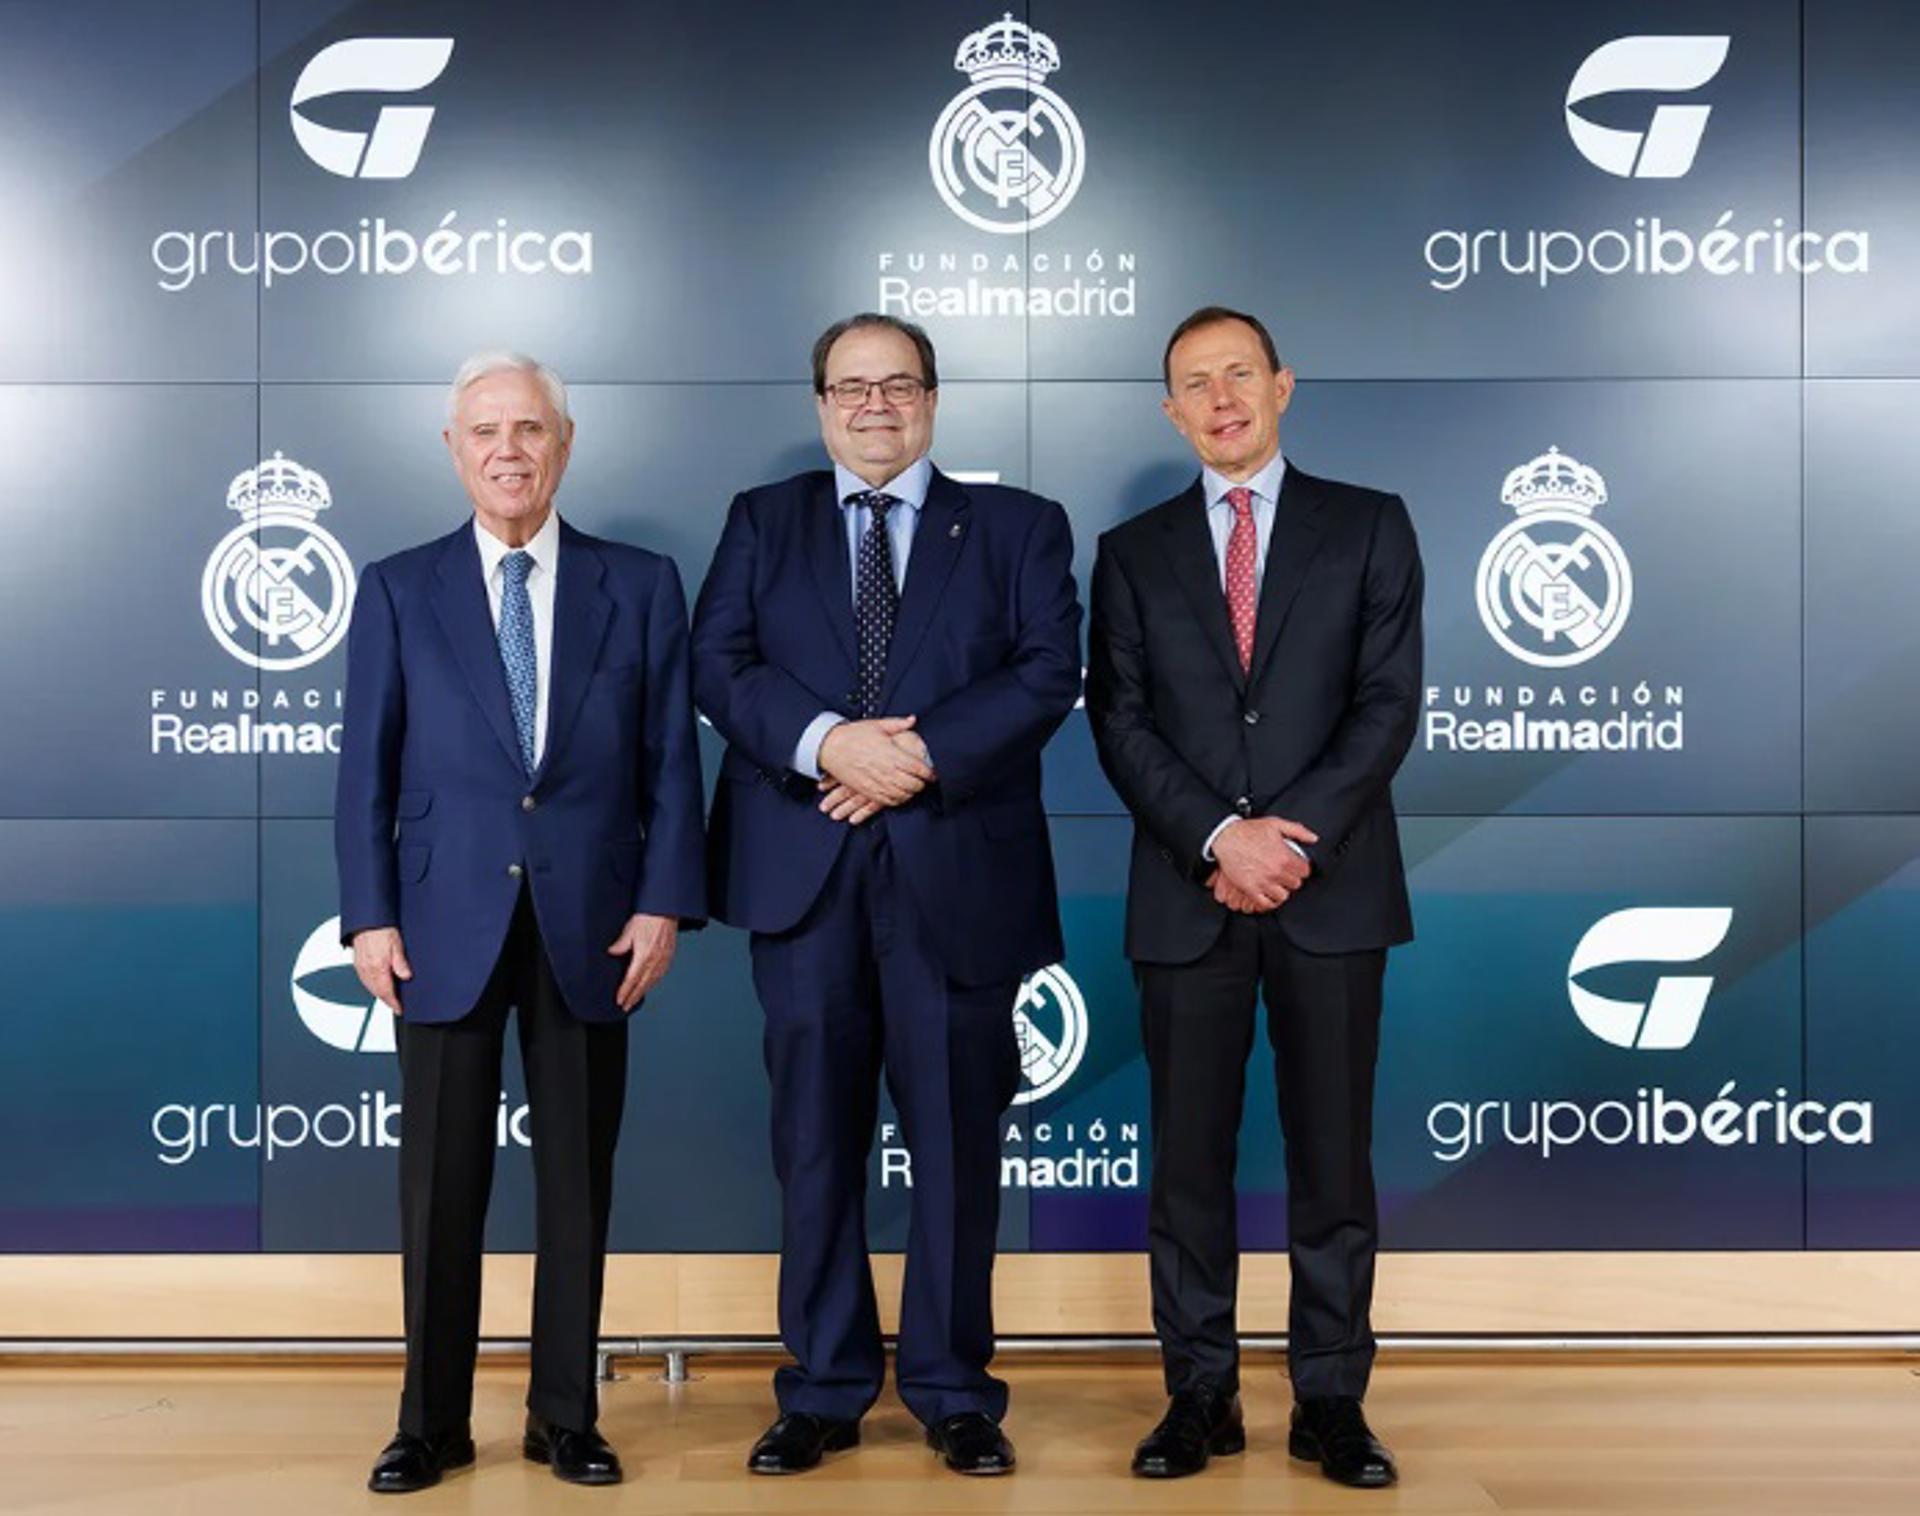 Imagen tras la firma del acuerdo entre la Fundación Real Madrid y Grupo Ibérica.EFE/FUNDACIÓN REAL MADRID - IMÁGEN CEDIDA CRÉDITO OBLIGATORIO